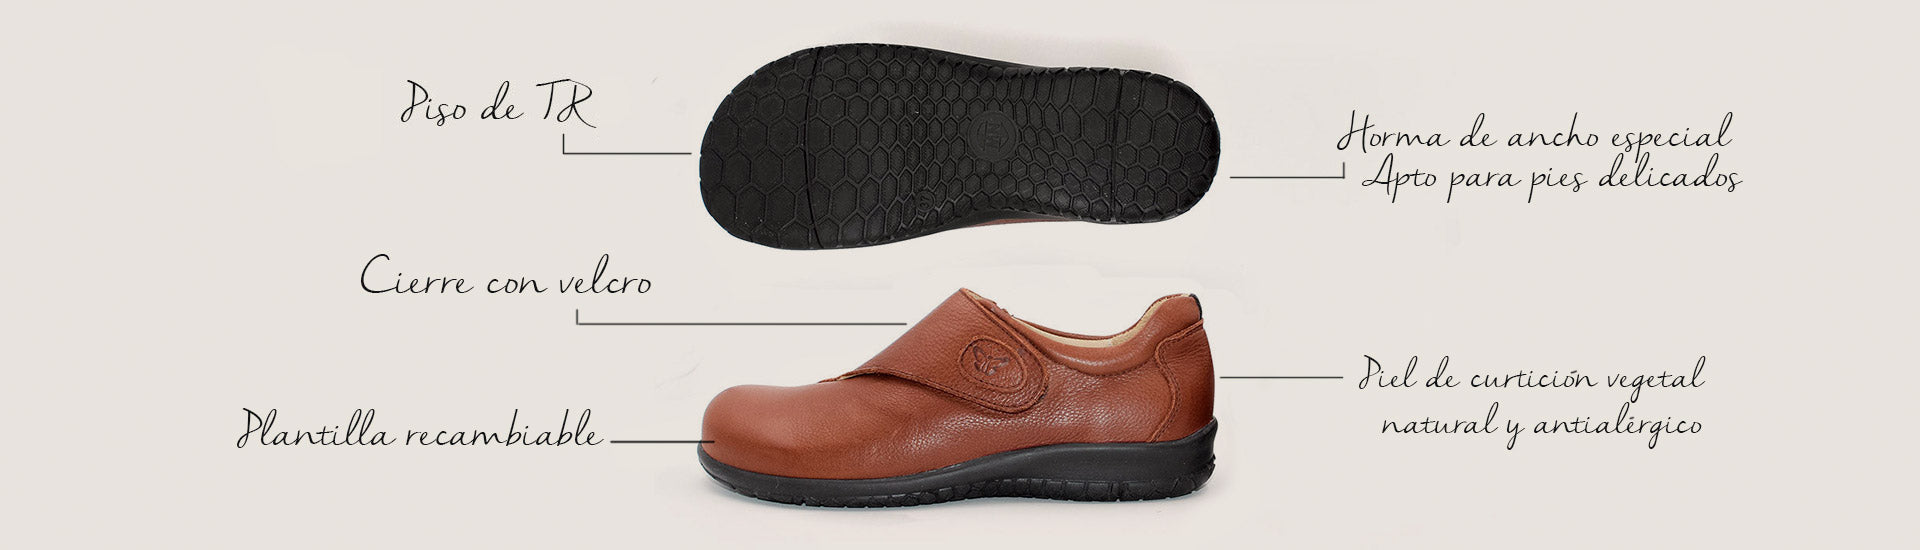 Calzado cómodo de para pies delicados - Zapato 100% antialérgico - Made in Spain – Etiquetado "Color Beige" – Martin Natur España